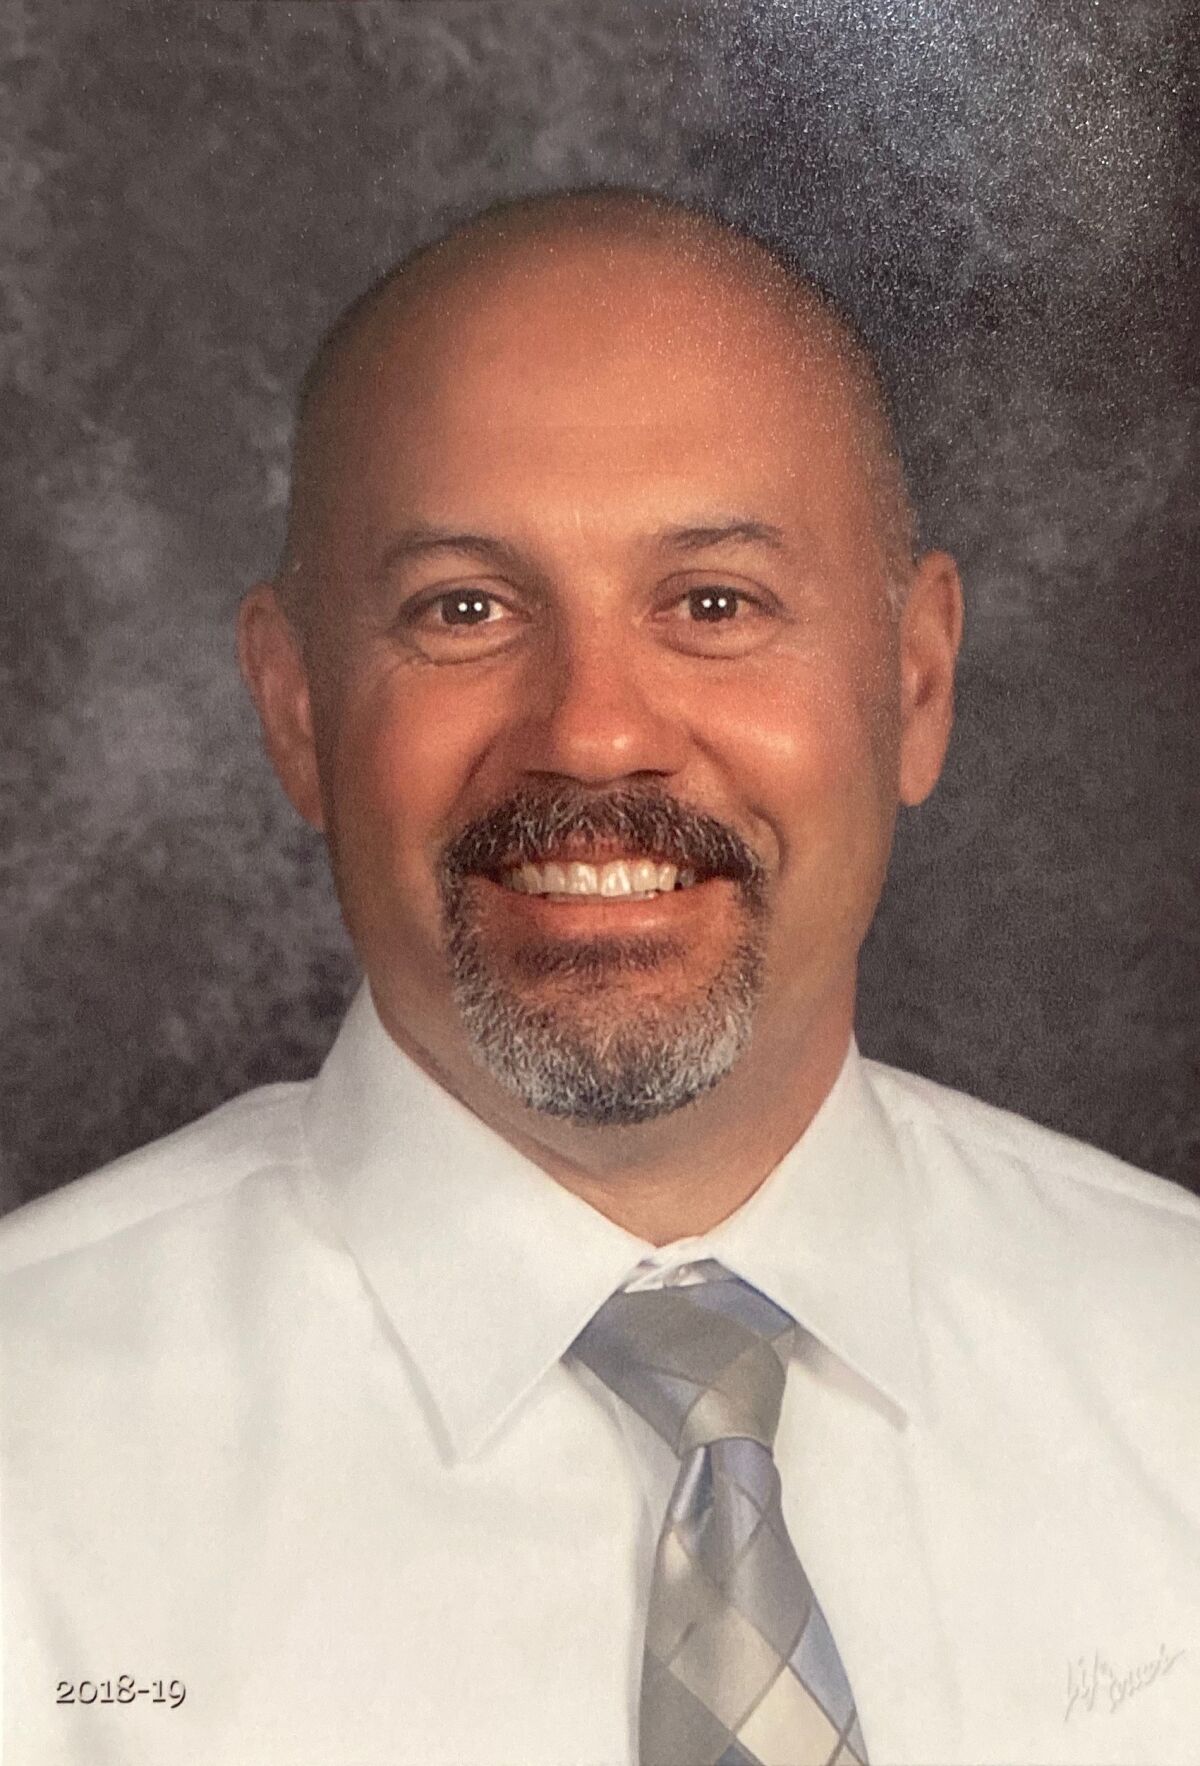 Jeff Luna has been named the new principal of Muirlands Middle School in La Jolla.